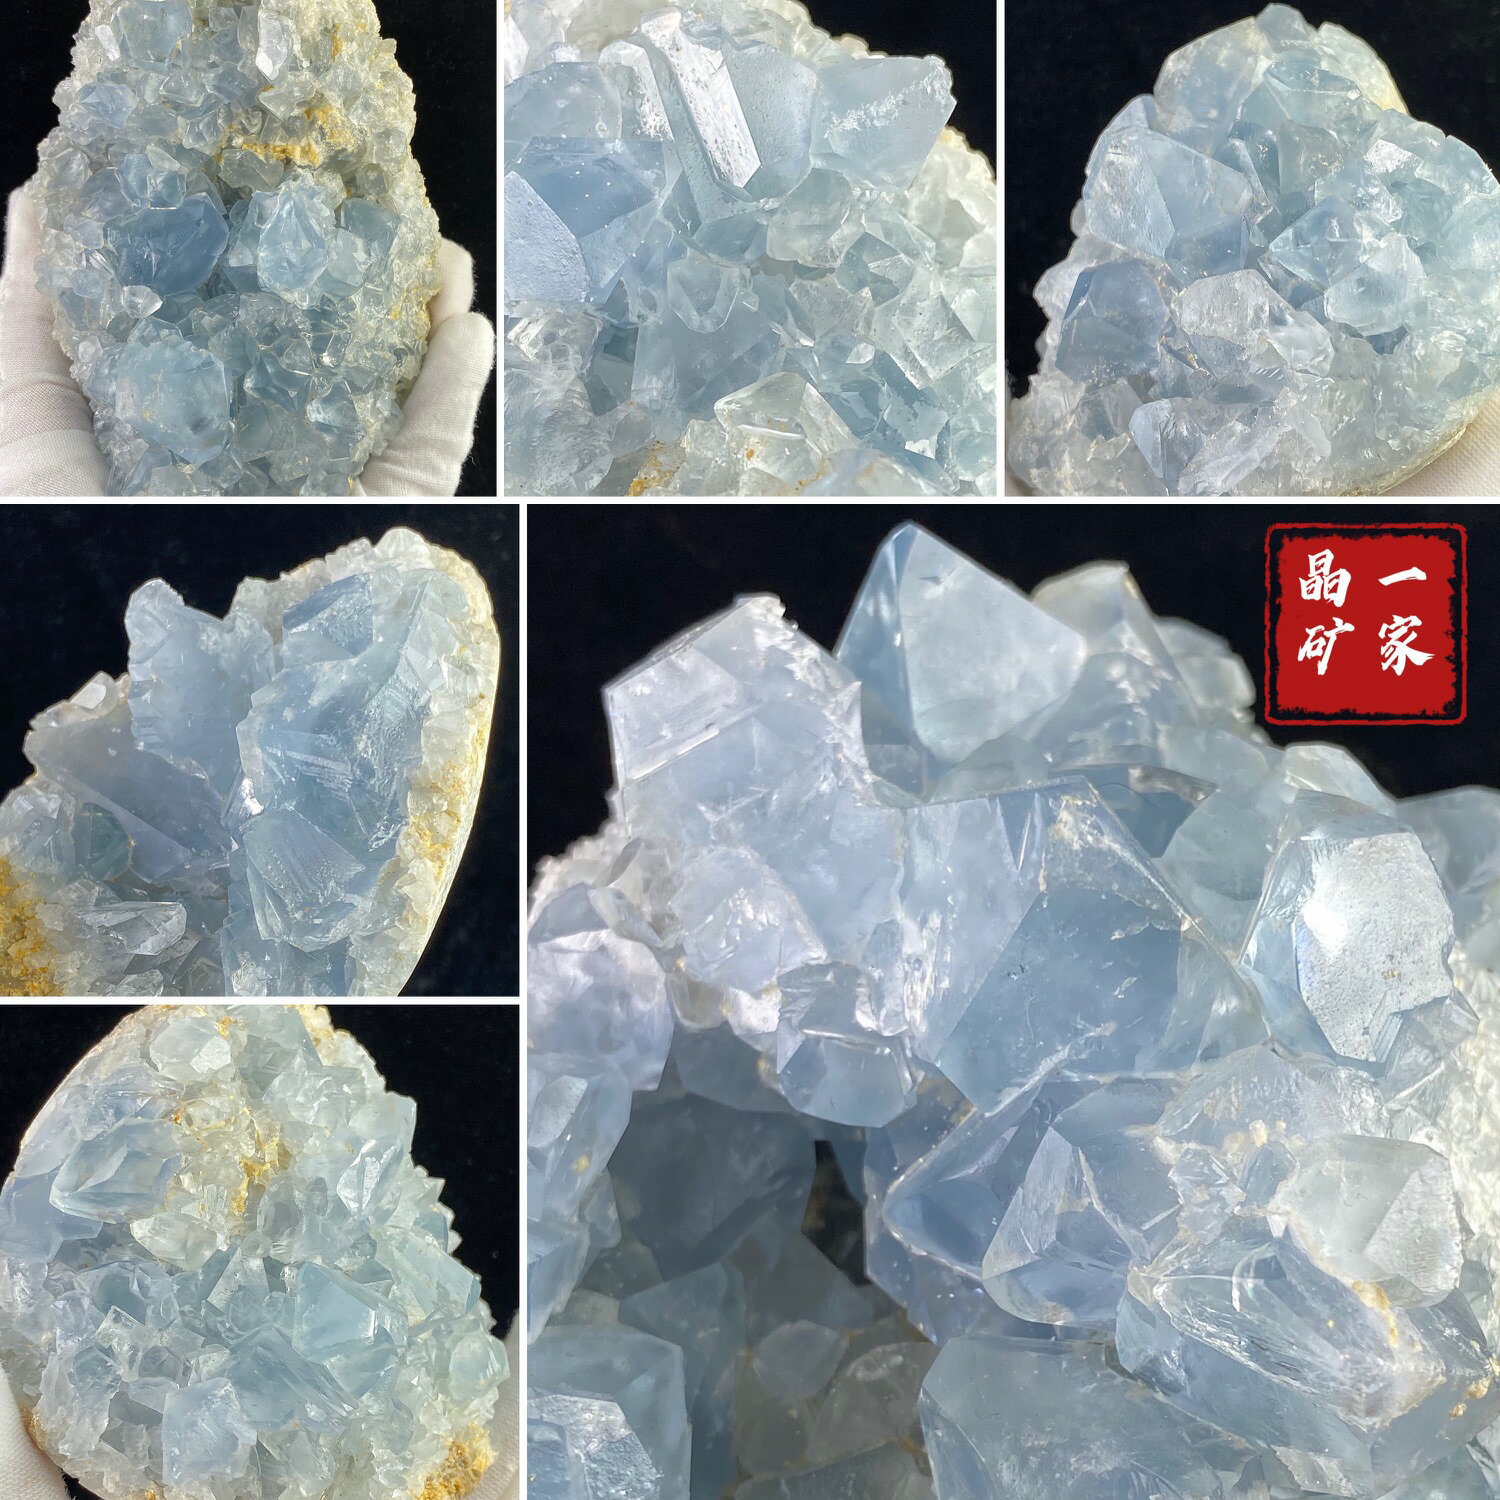 天然天青石原石淡藍色水晶礦物晶體標本奇石教學收藏擺件凈化消磁